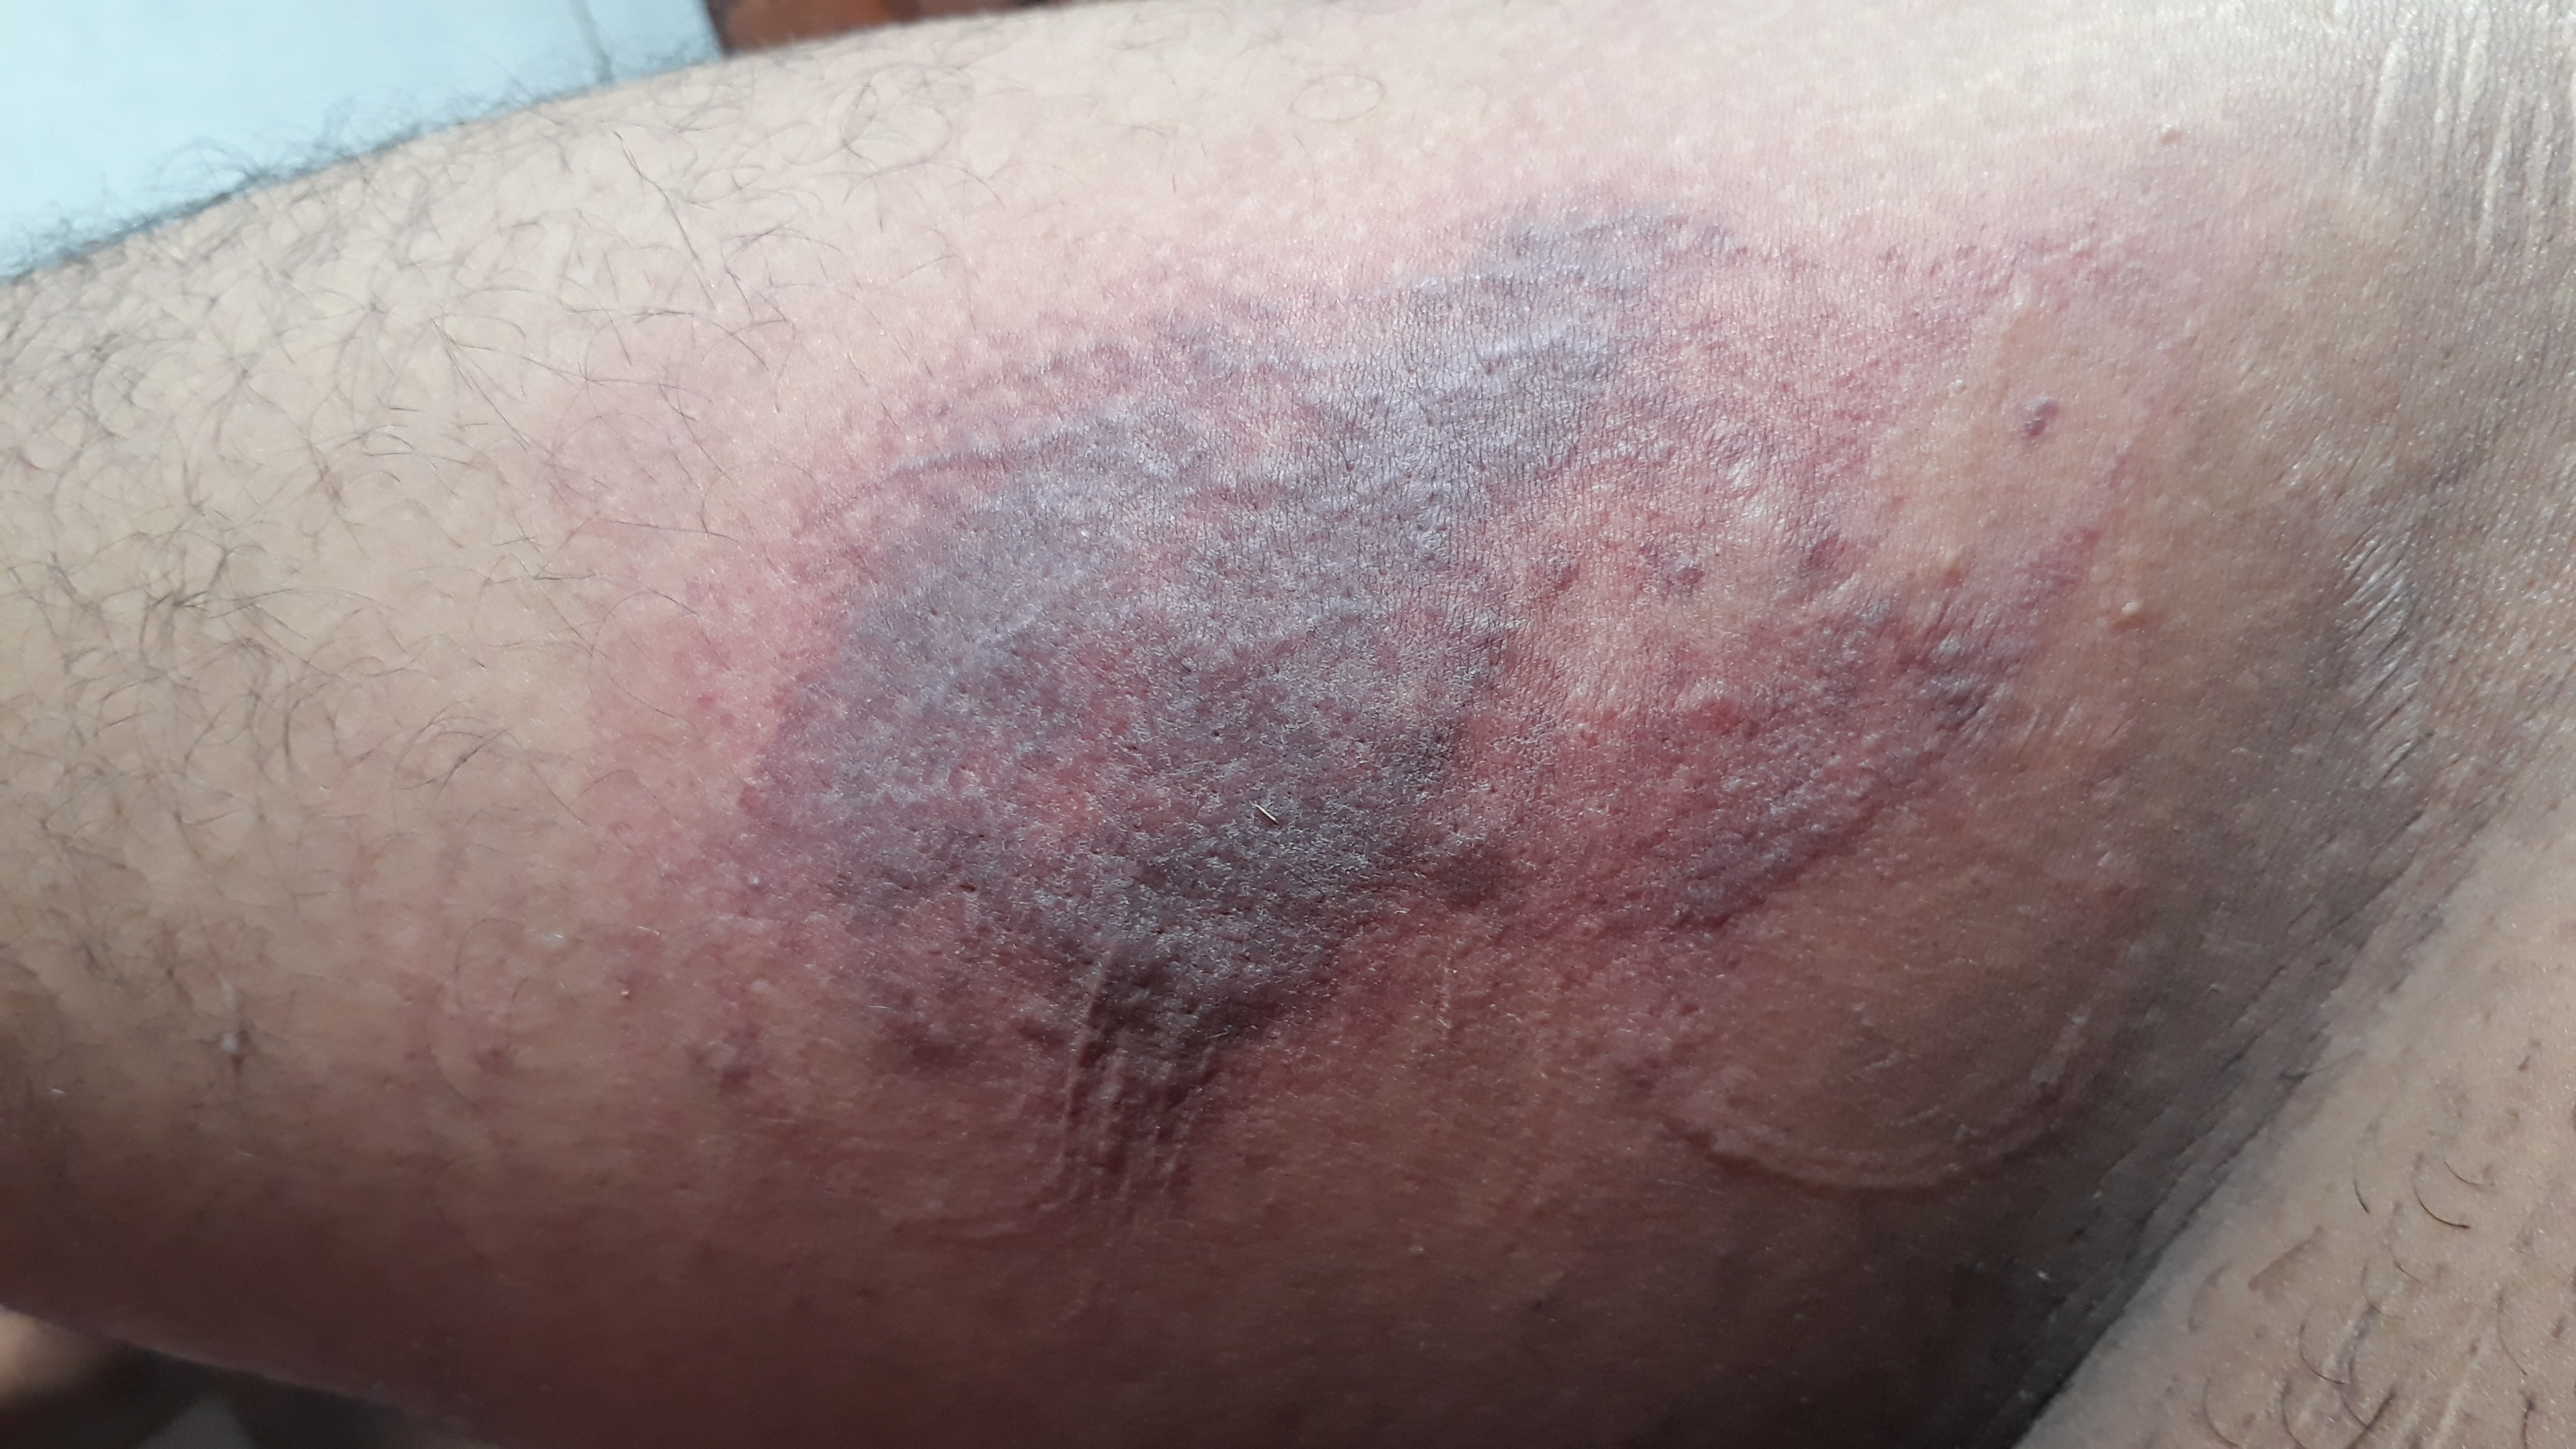 Pain and Pleasure - Bruising my thigh